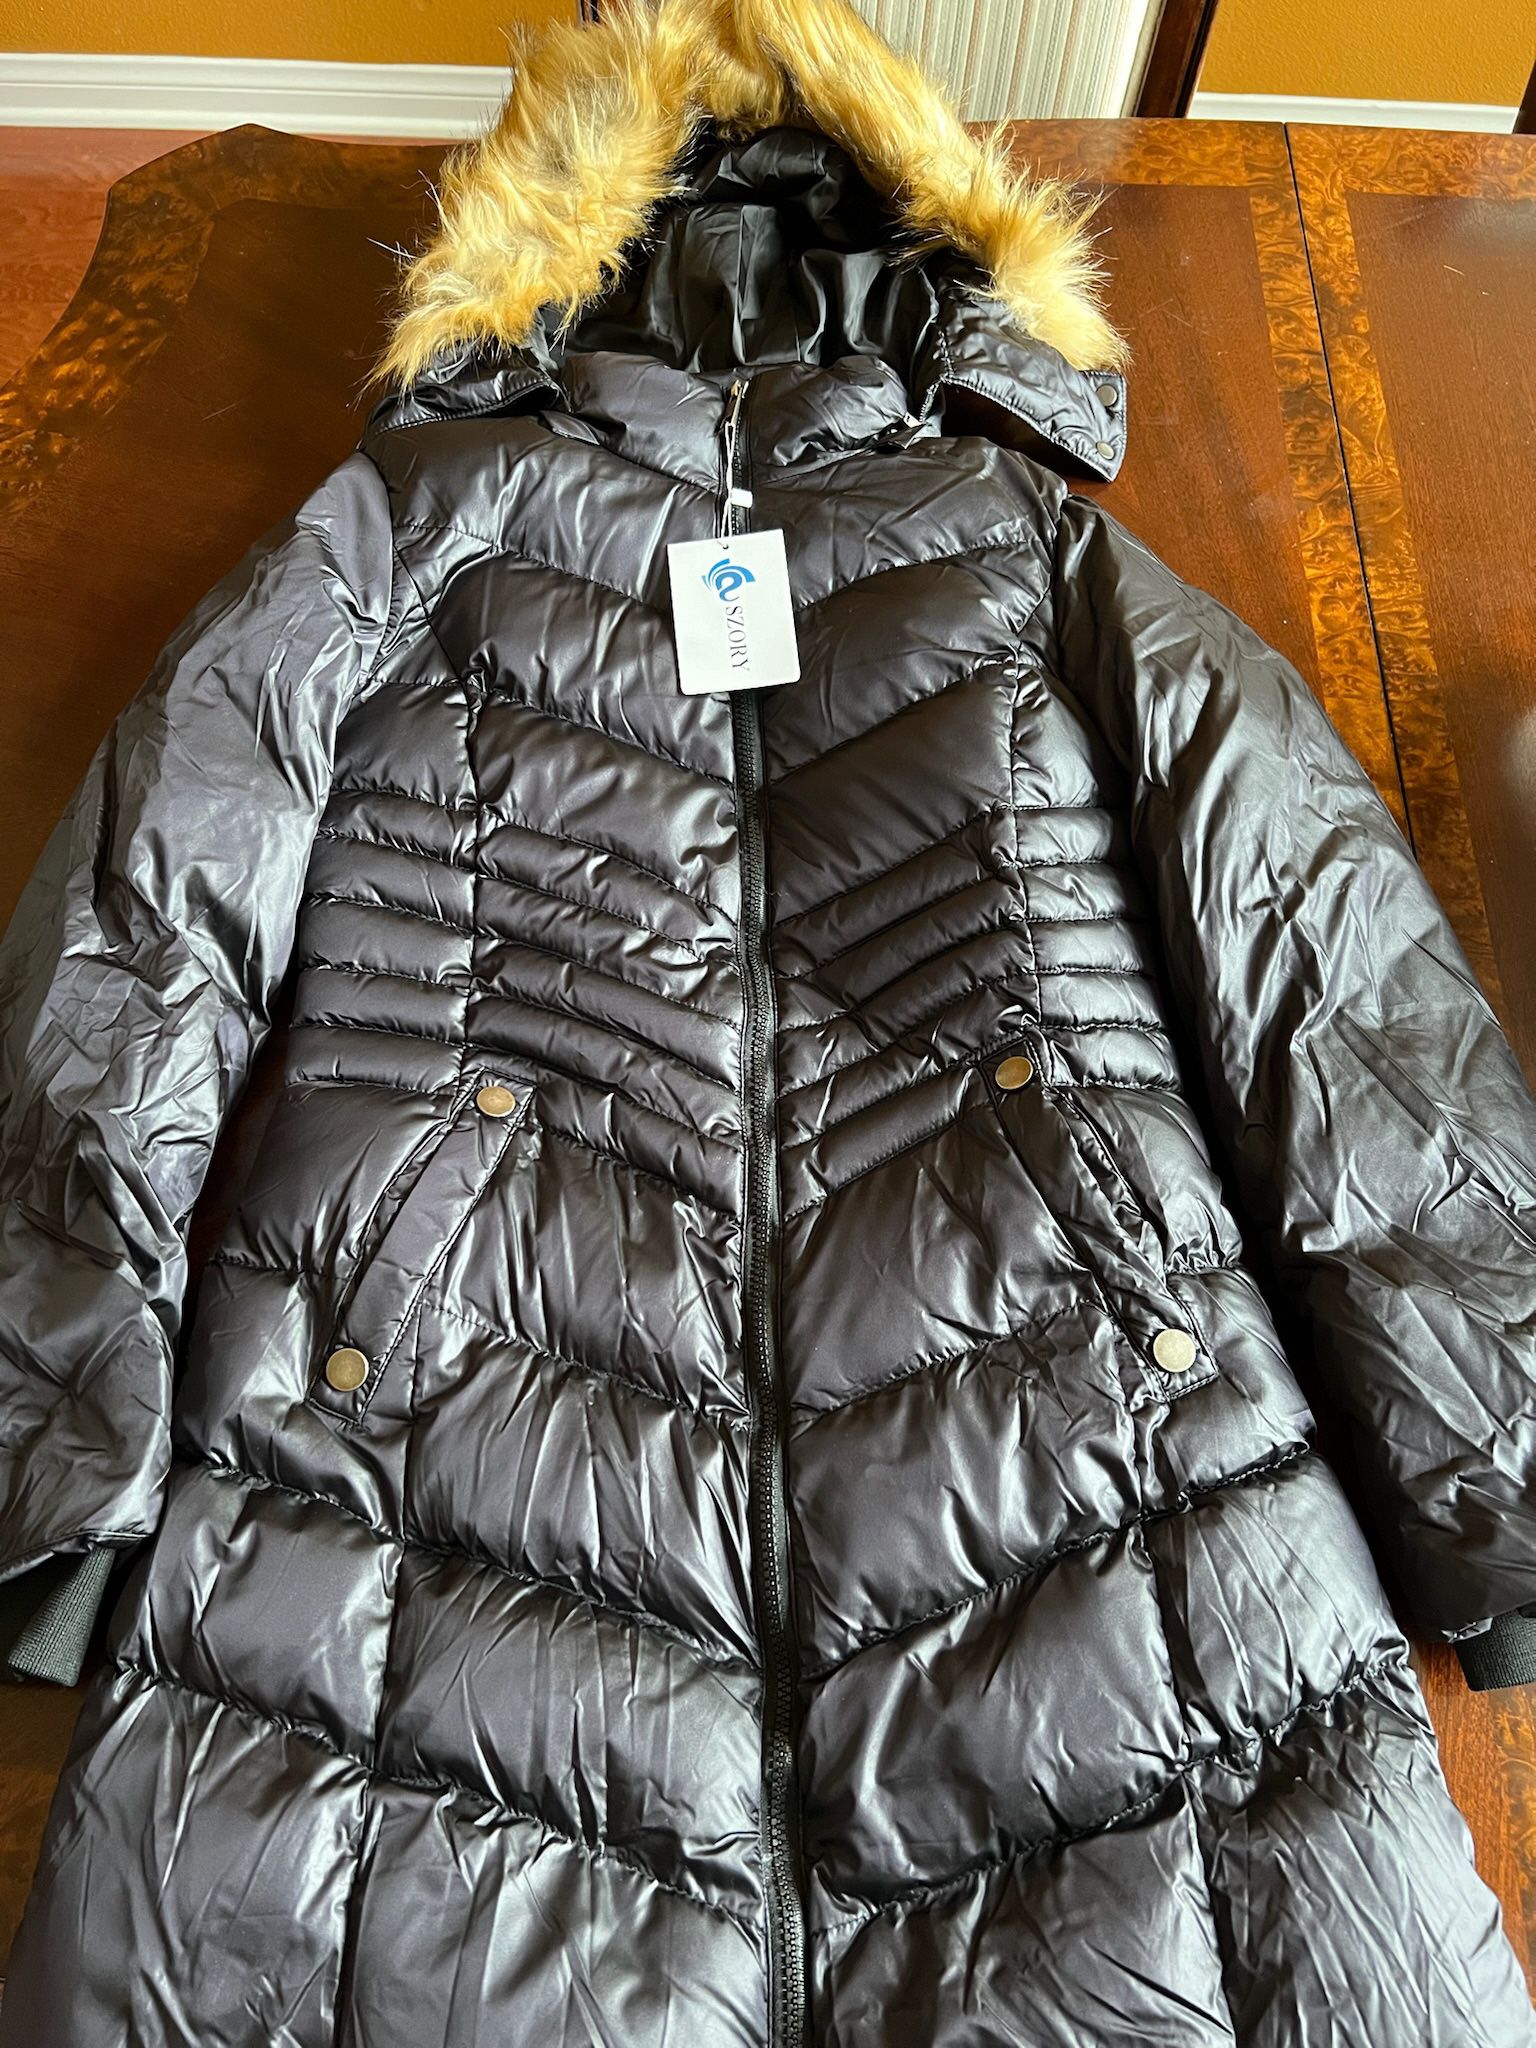 Women's Down Jacket Winter Long Puffer Parka Coat